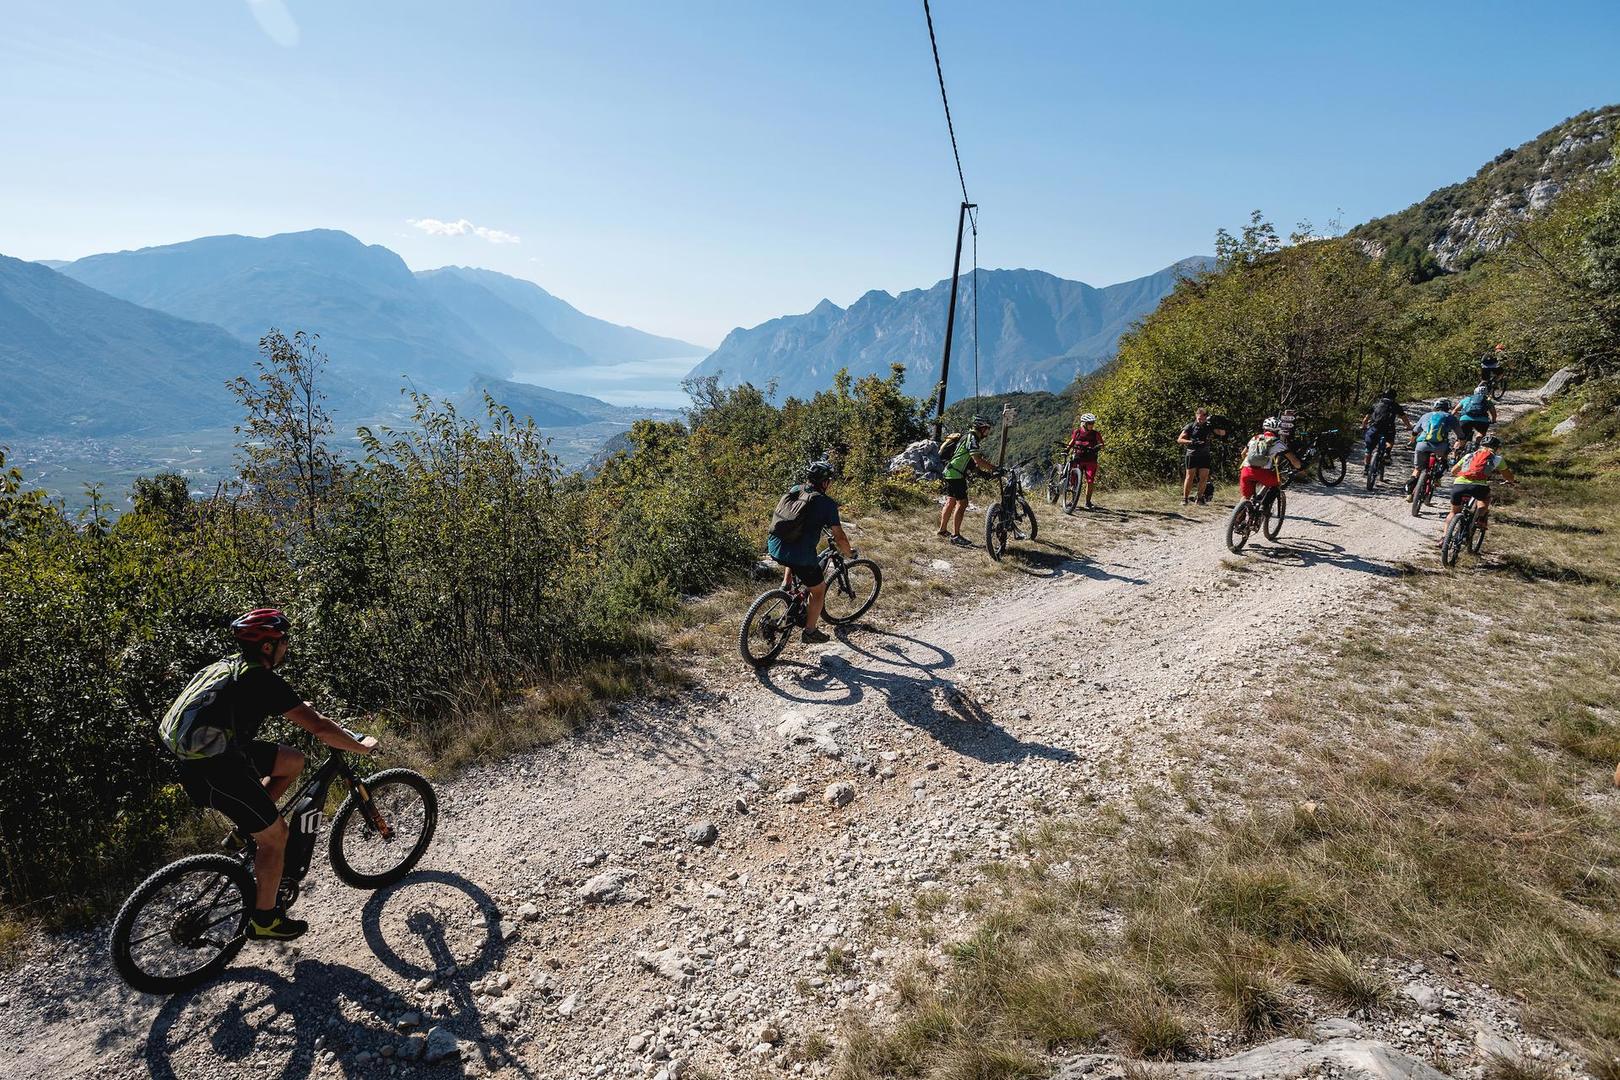 I partecipanti a Emtb Adventure affrontano un tratto di percorso panoramico nel cuore del Garda Trentino - foto: Mila Matavz